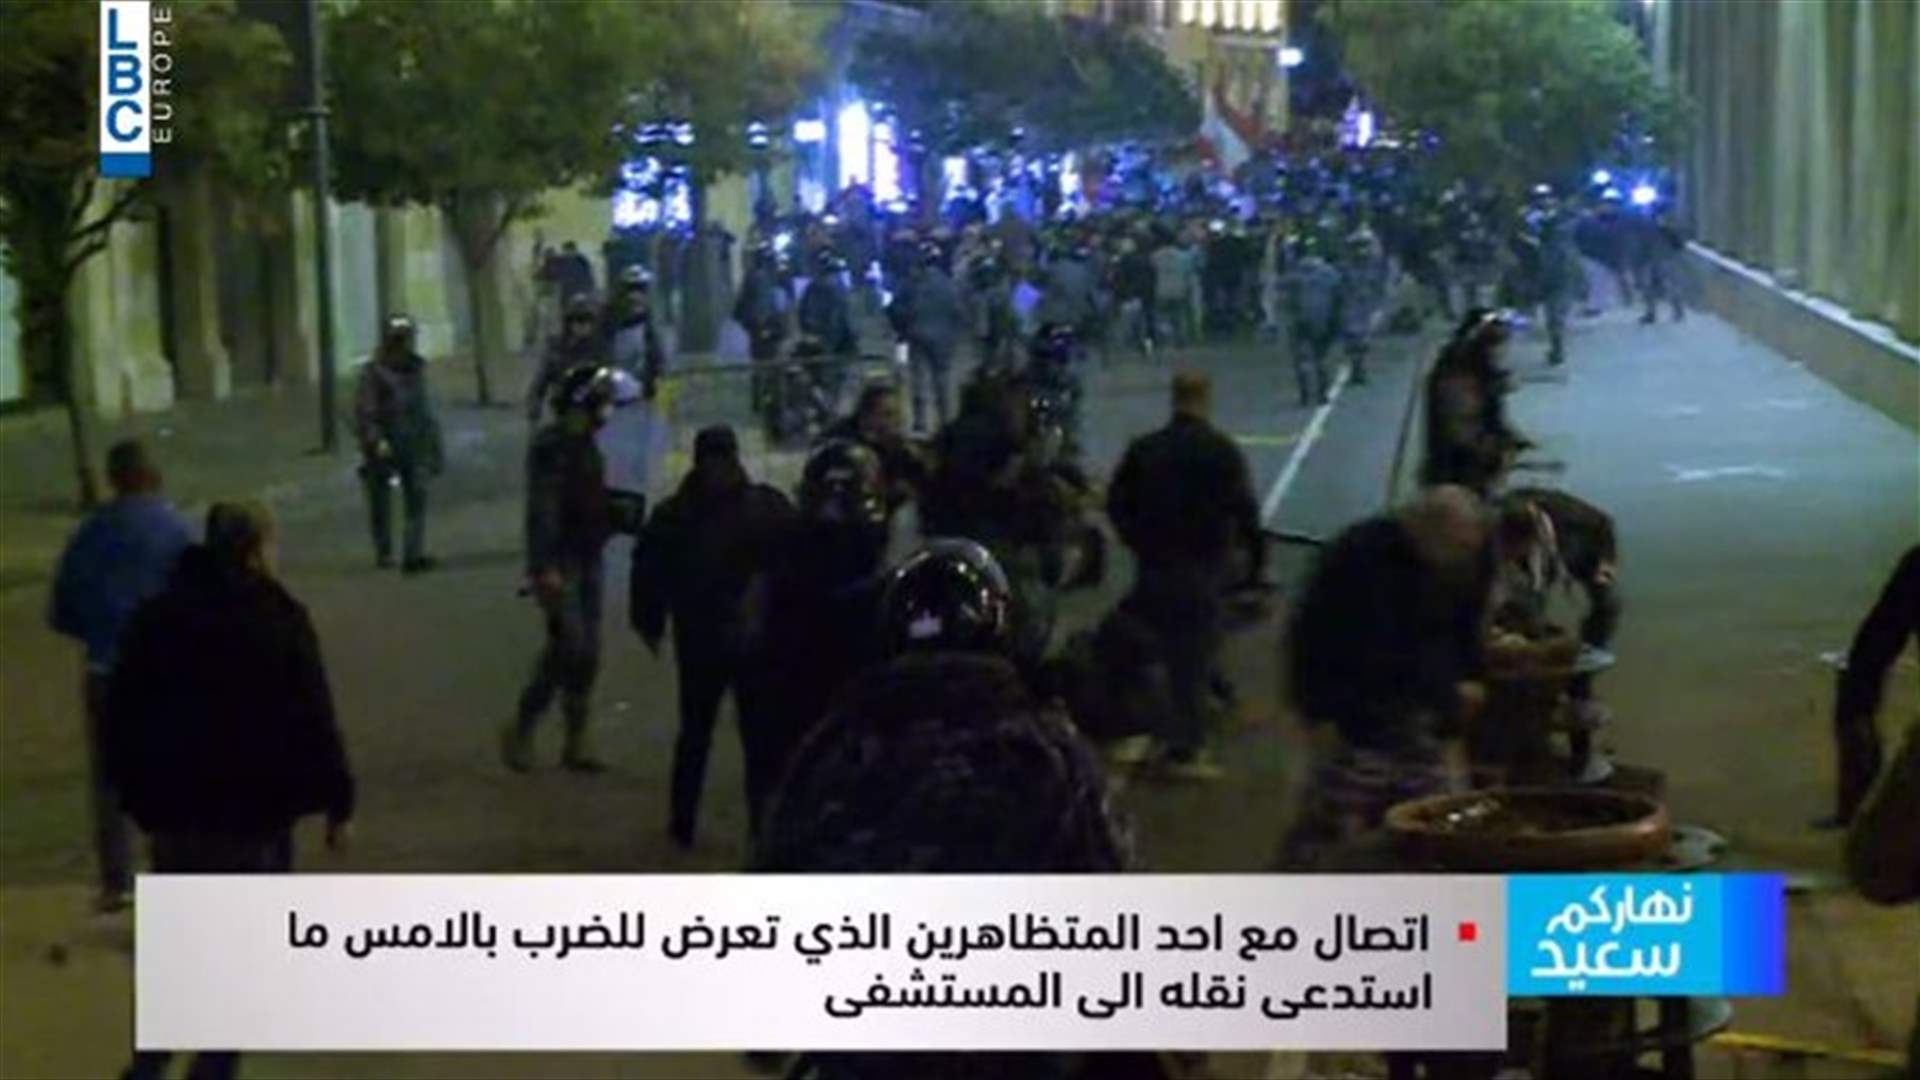 اتصال مع متظاهر تعرض للضرب أمس في وسط بيروت... ماذا كشف عن المواجهات؟